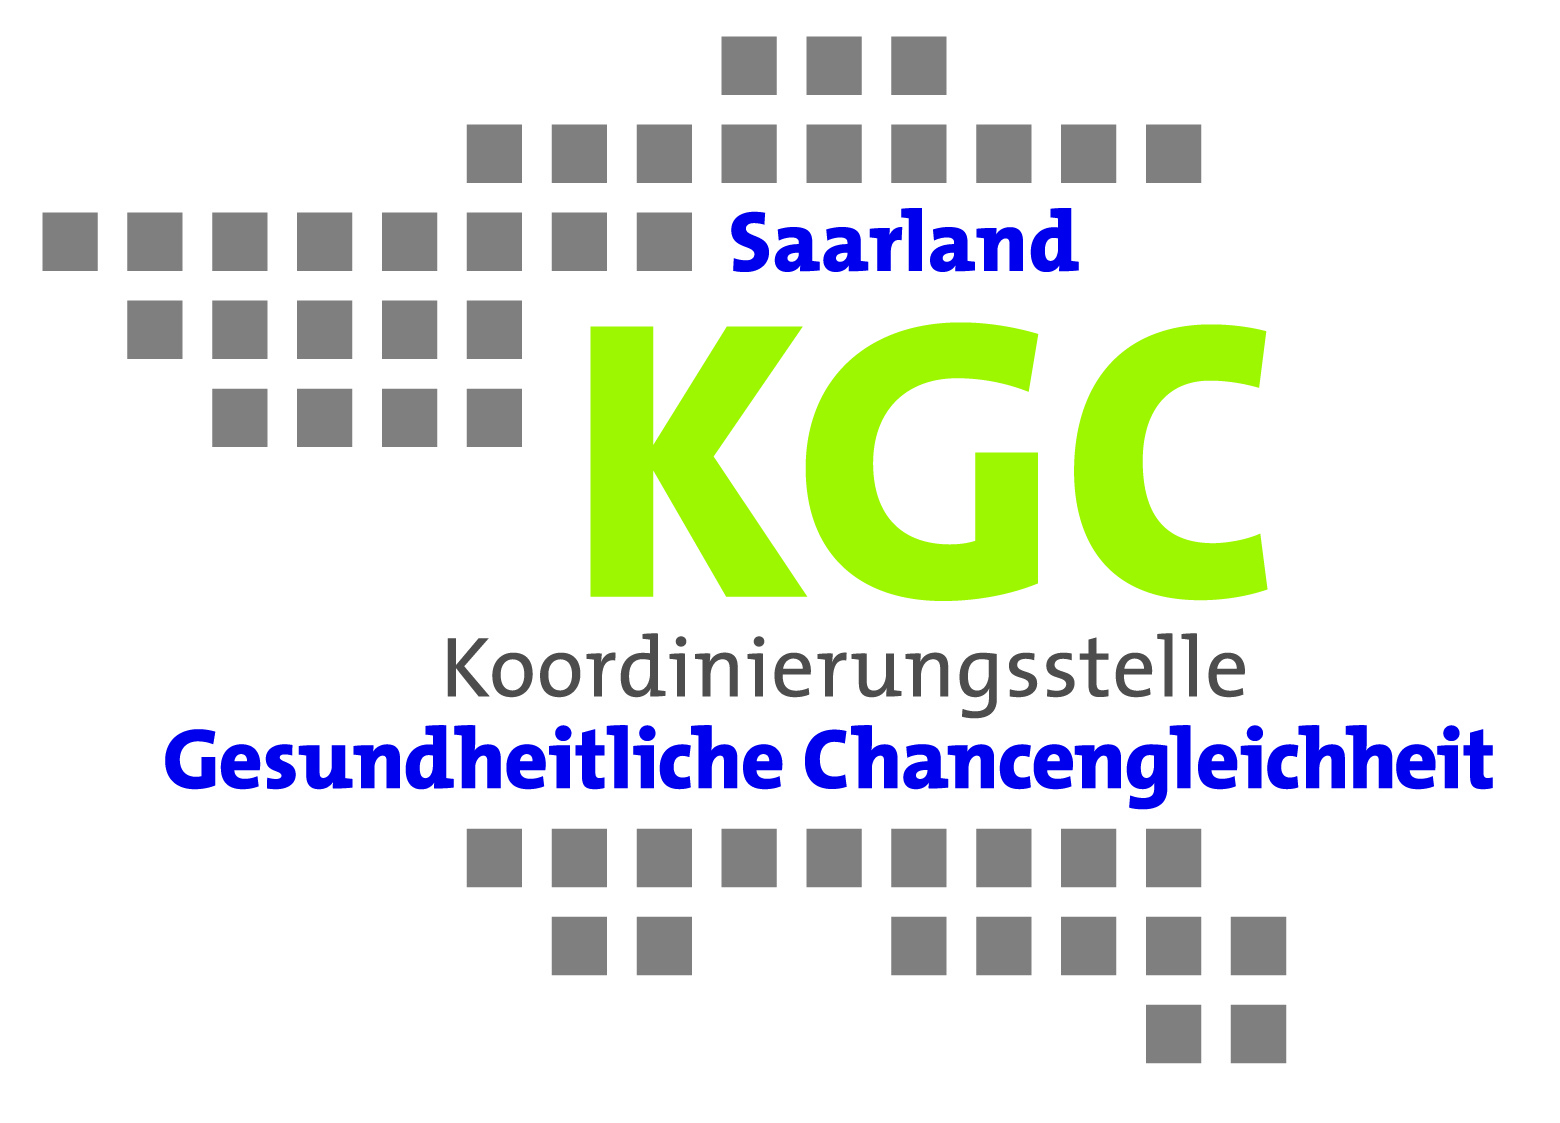 Koordinierungsstelle Gesundheitliche Chancengleichheit Saarland